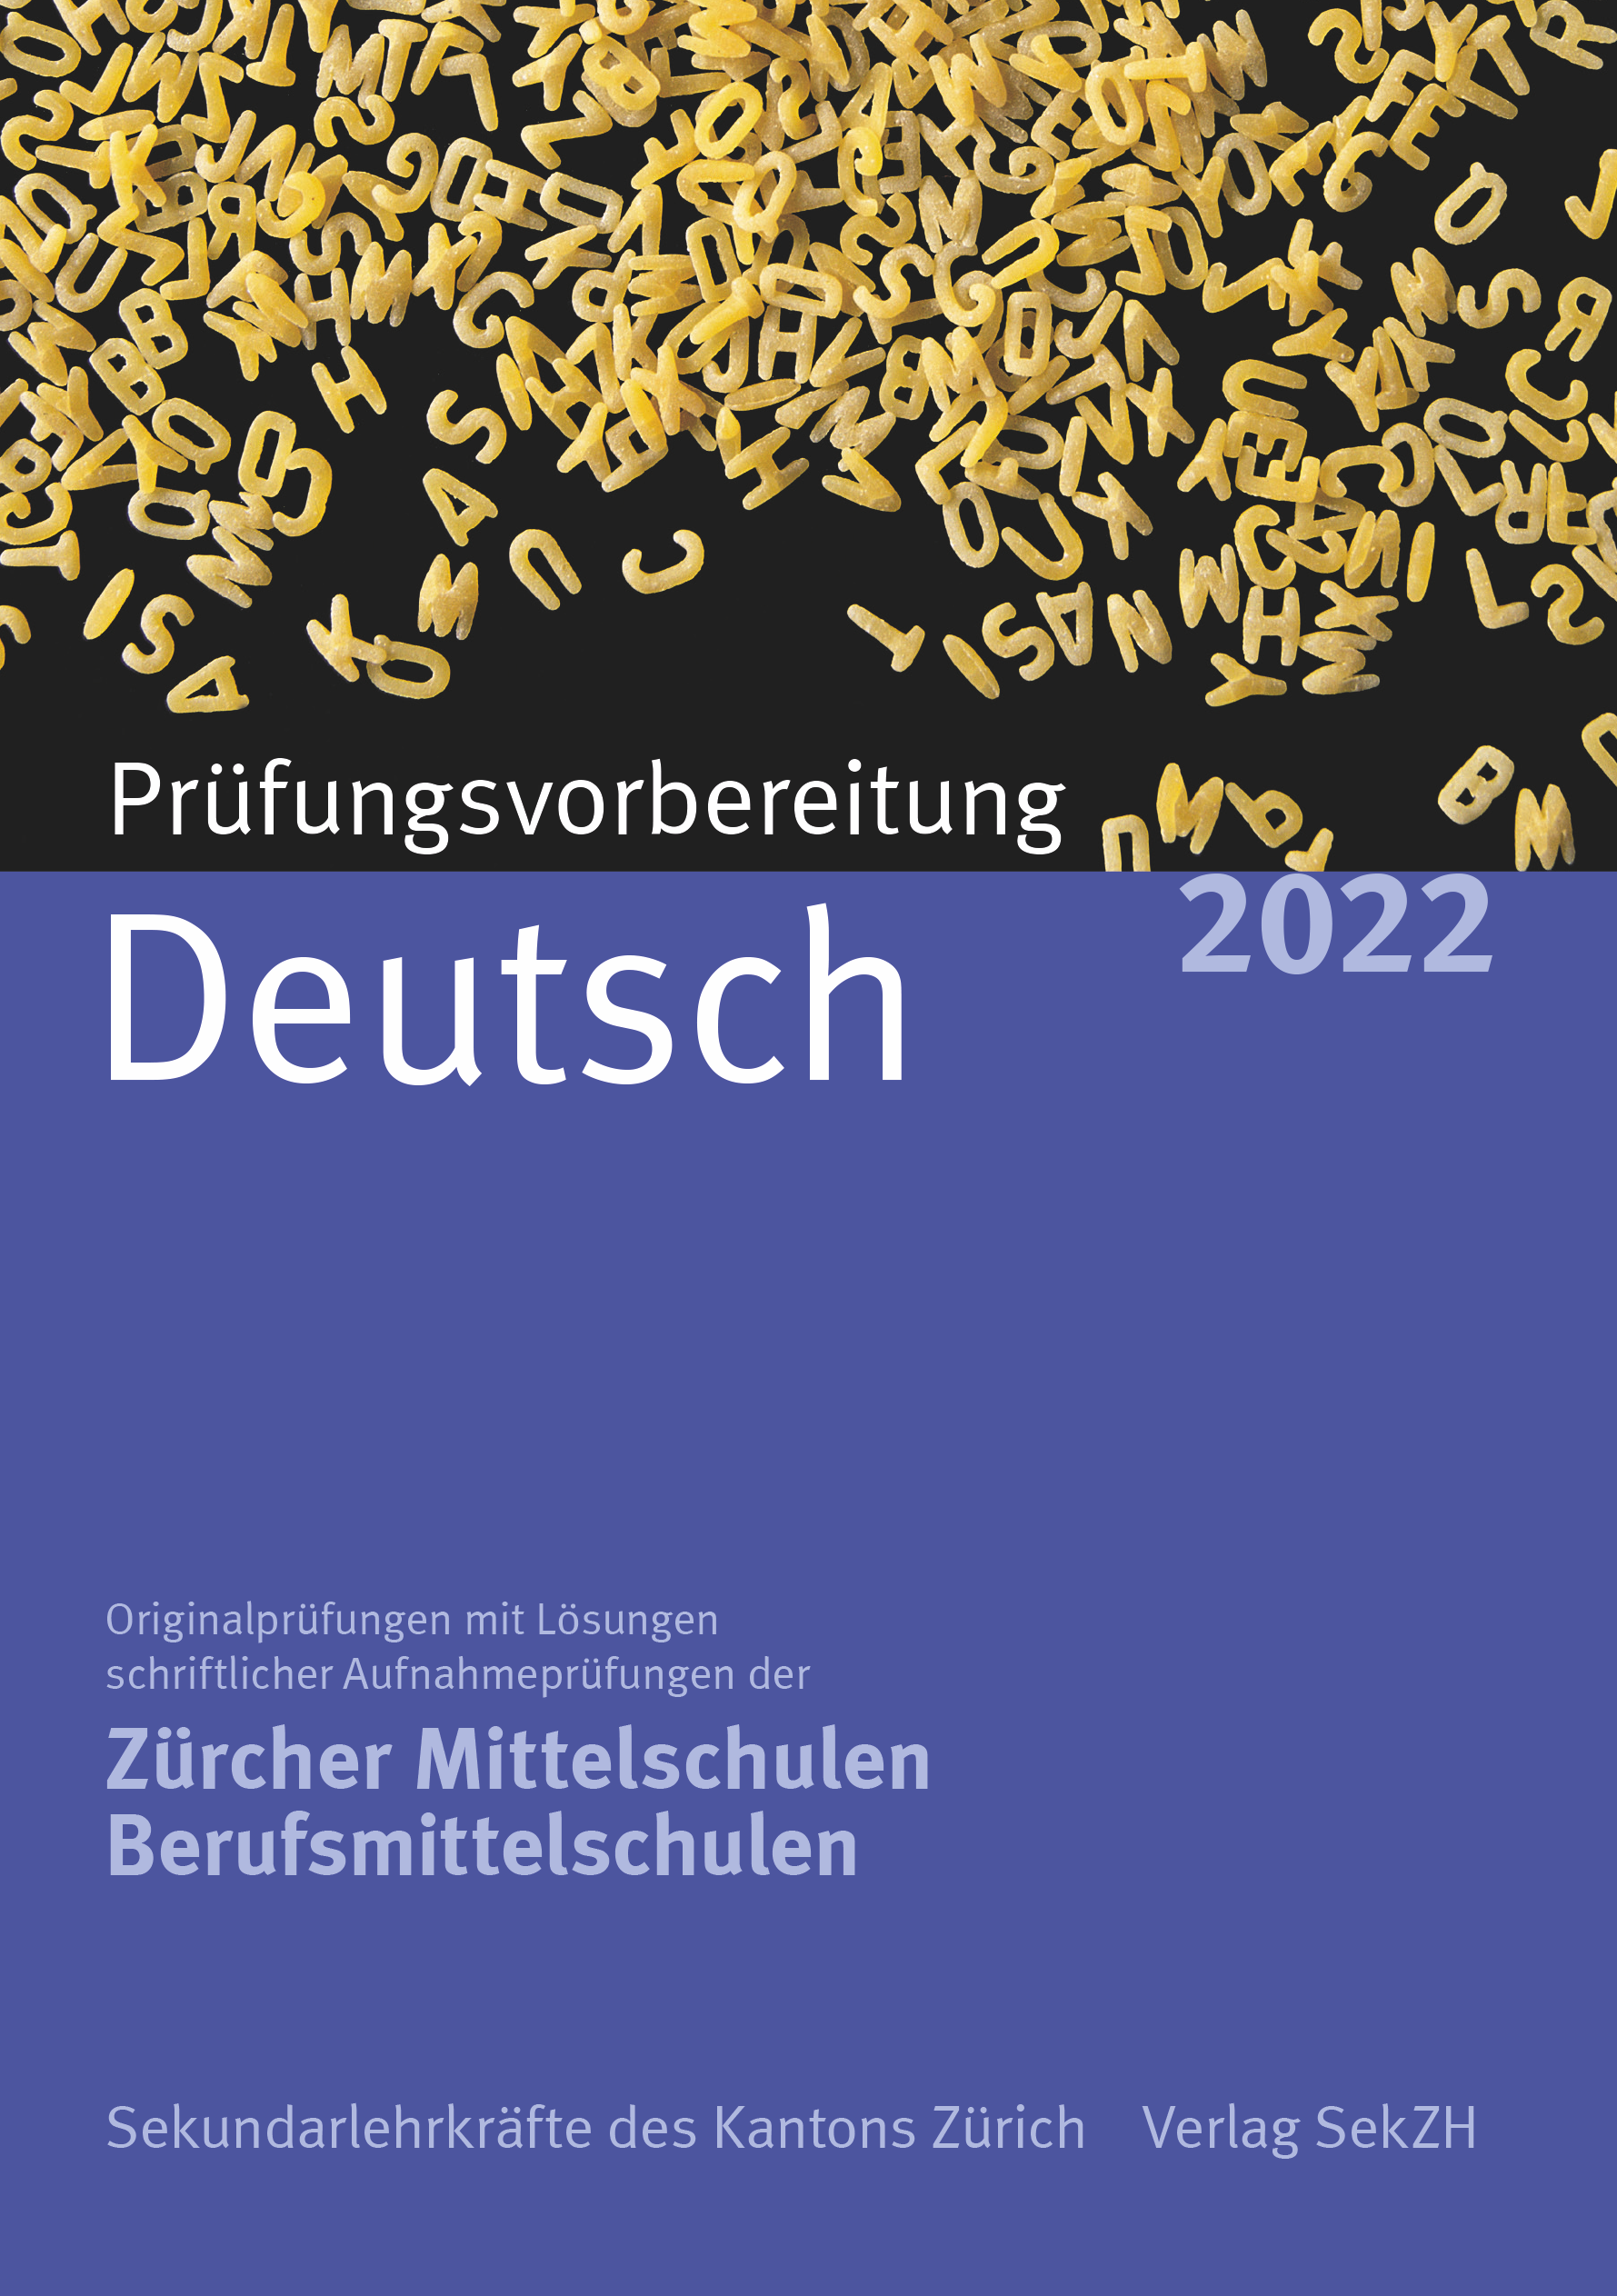 P101 - Prüfungsvorbereitung Deutsch 2022